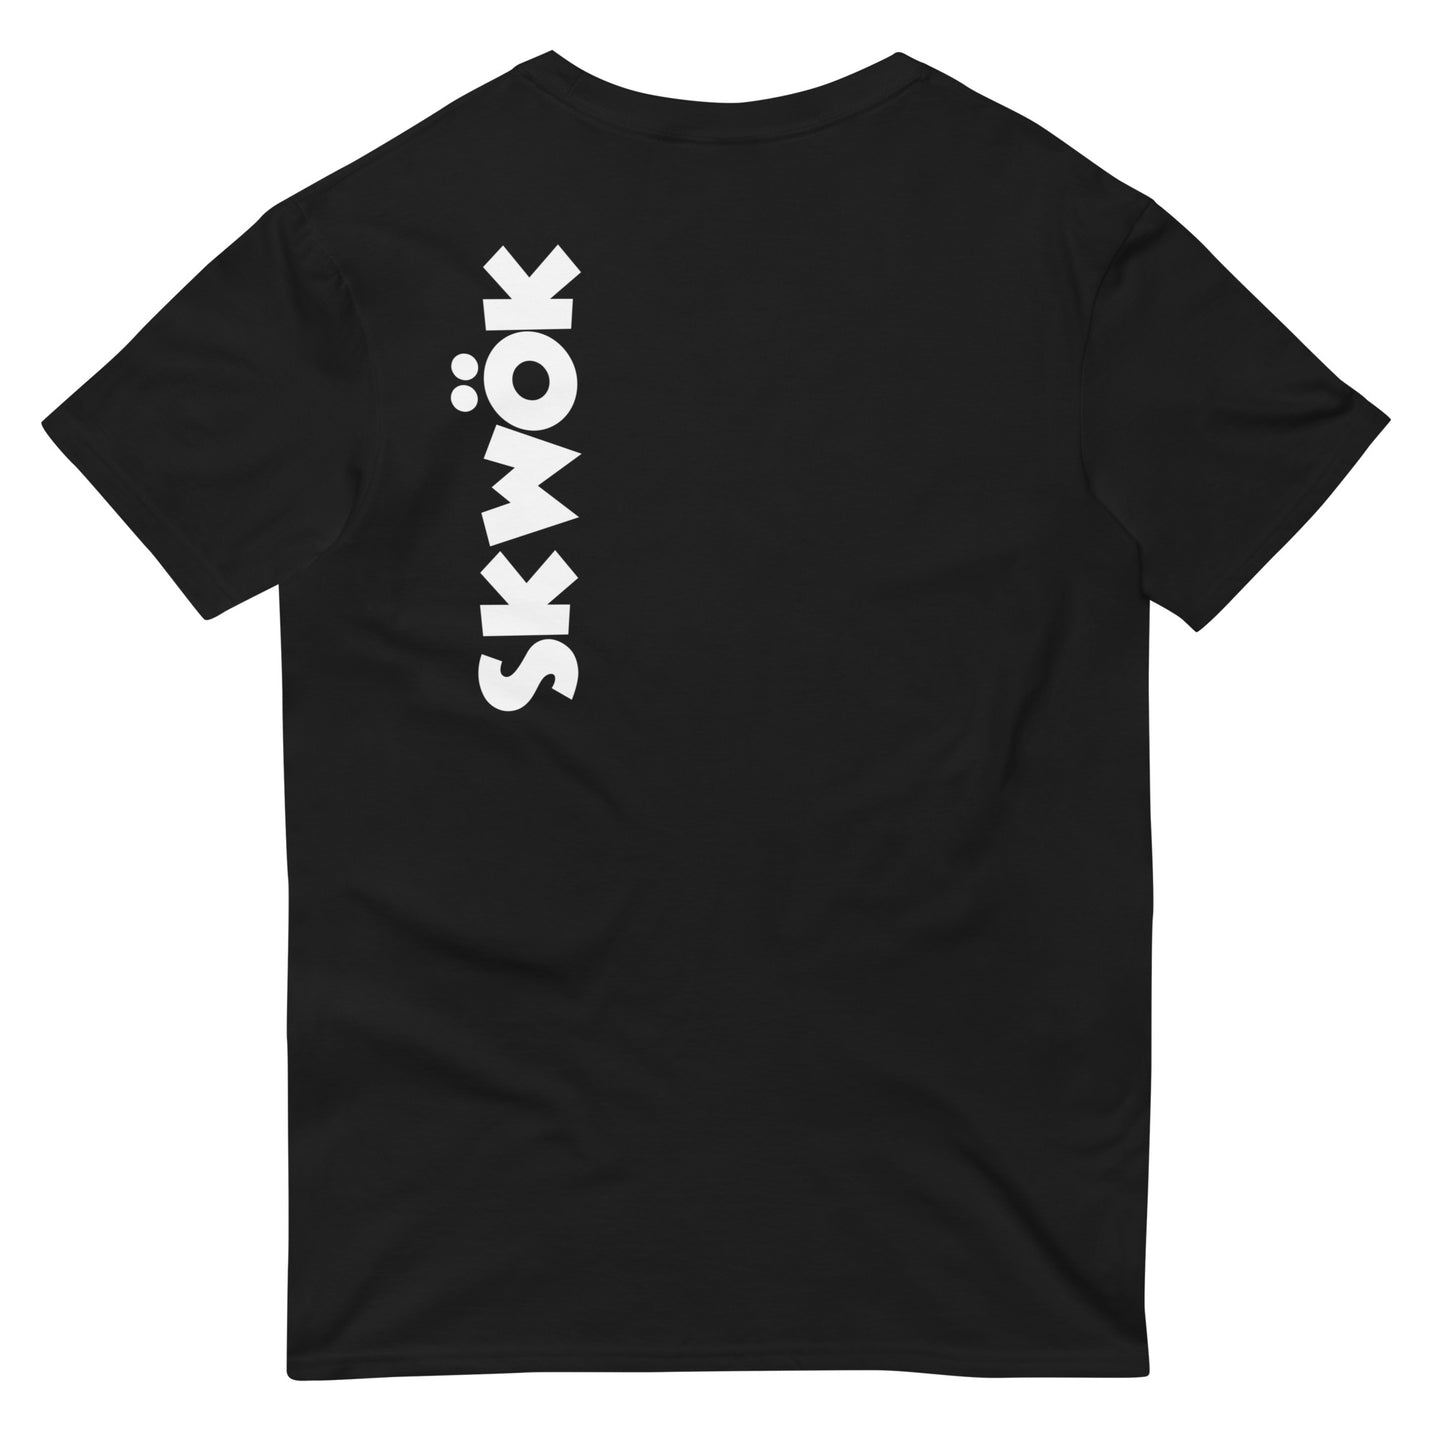 Skwok Brand / T-shirt / OG Logo II / White